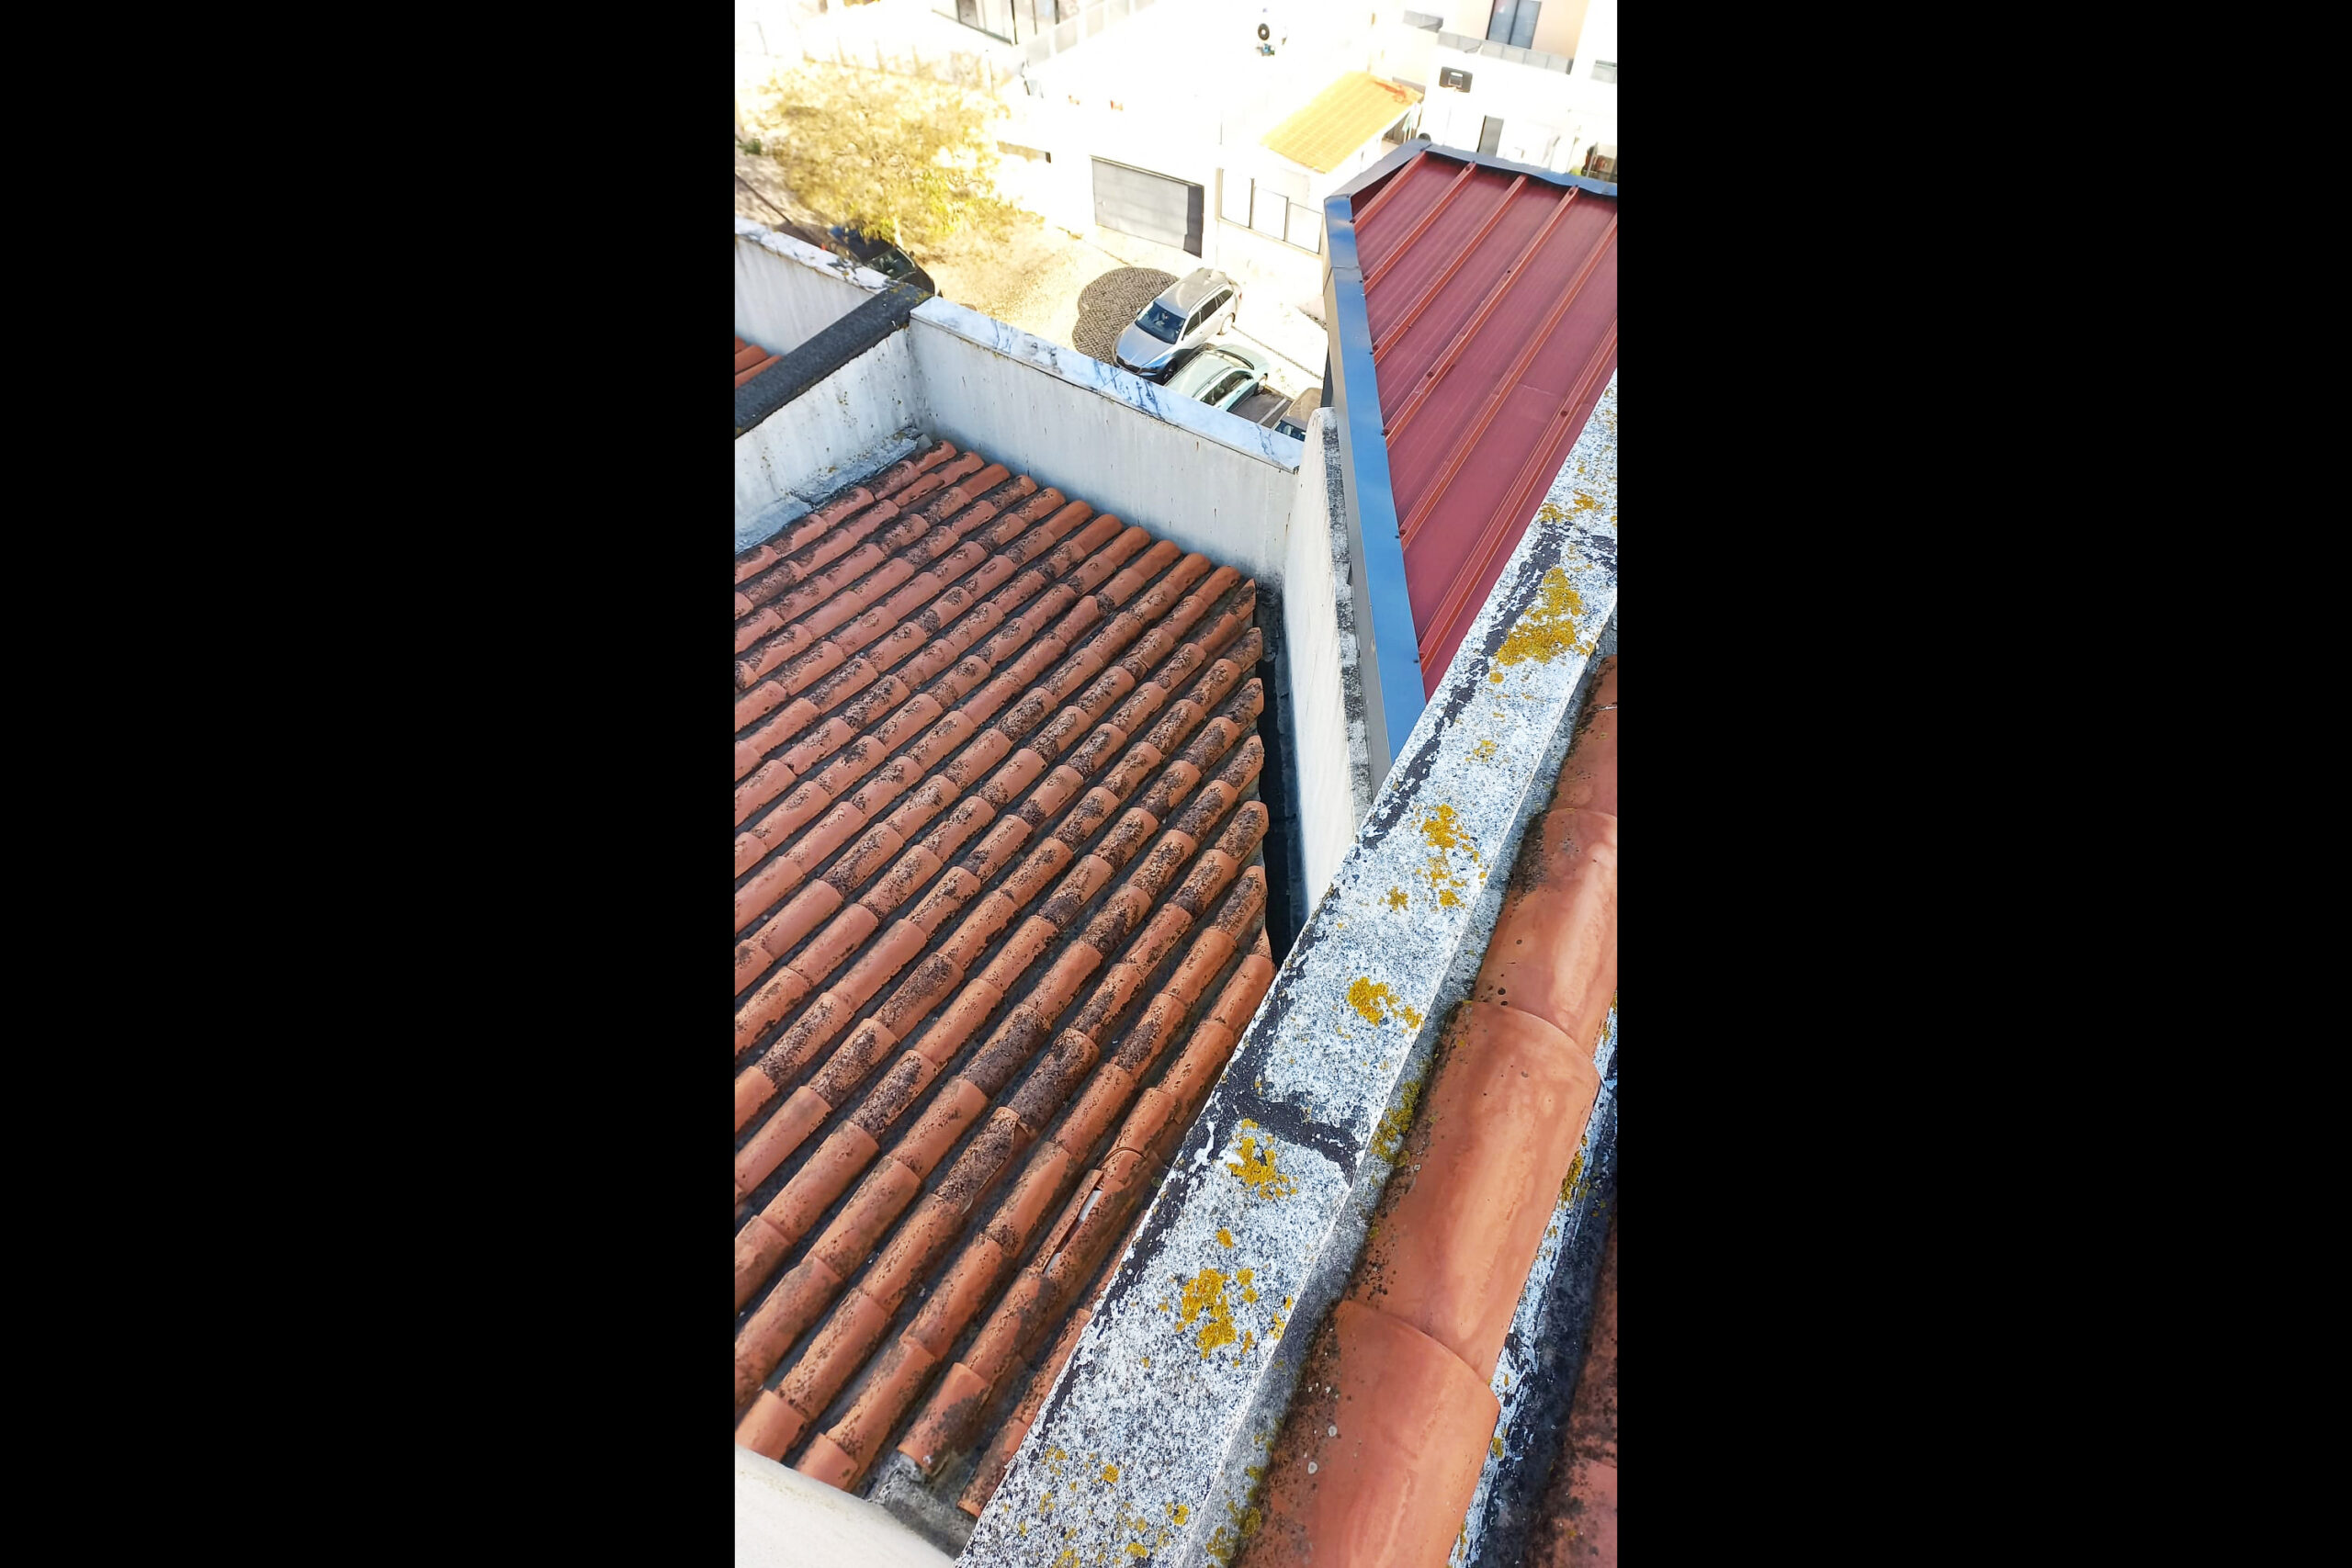 Reabilitação das fachadas e do telhado